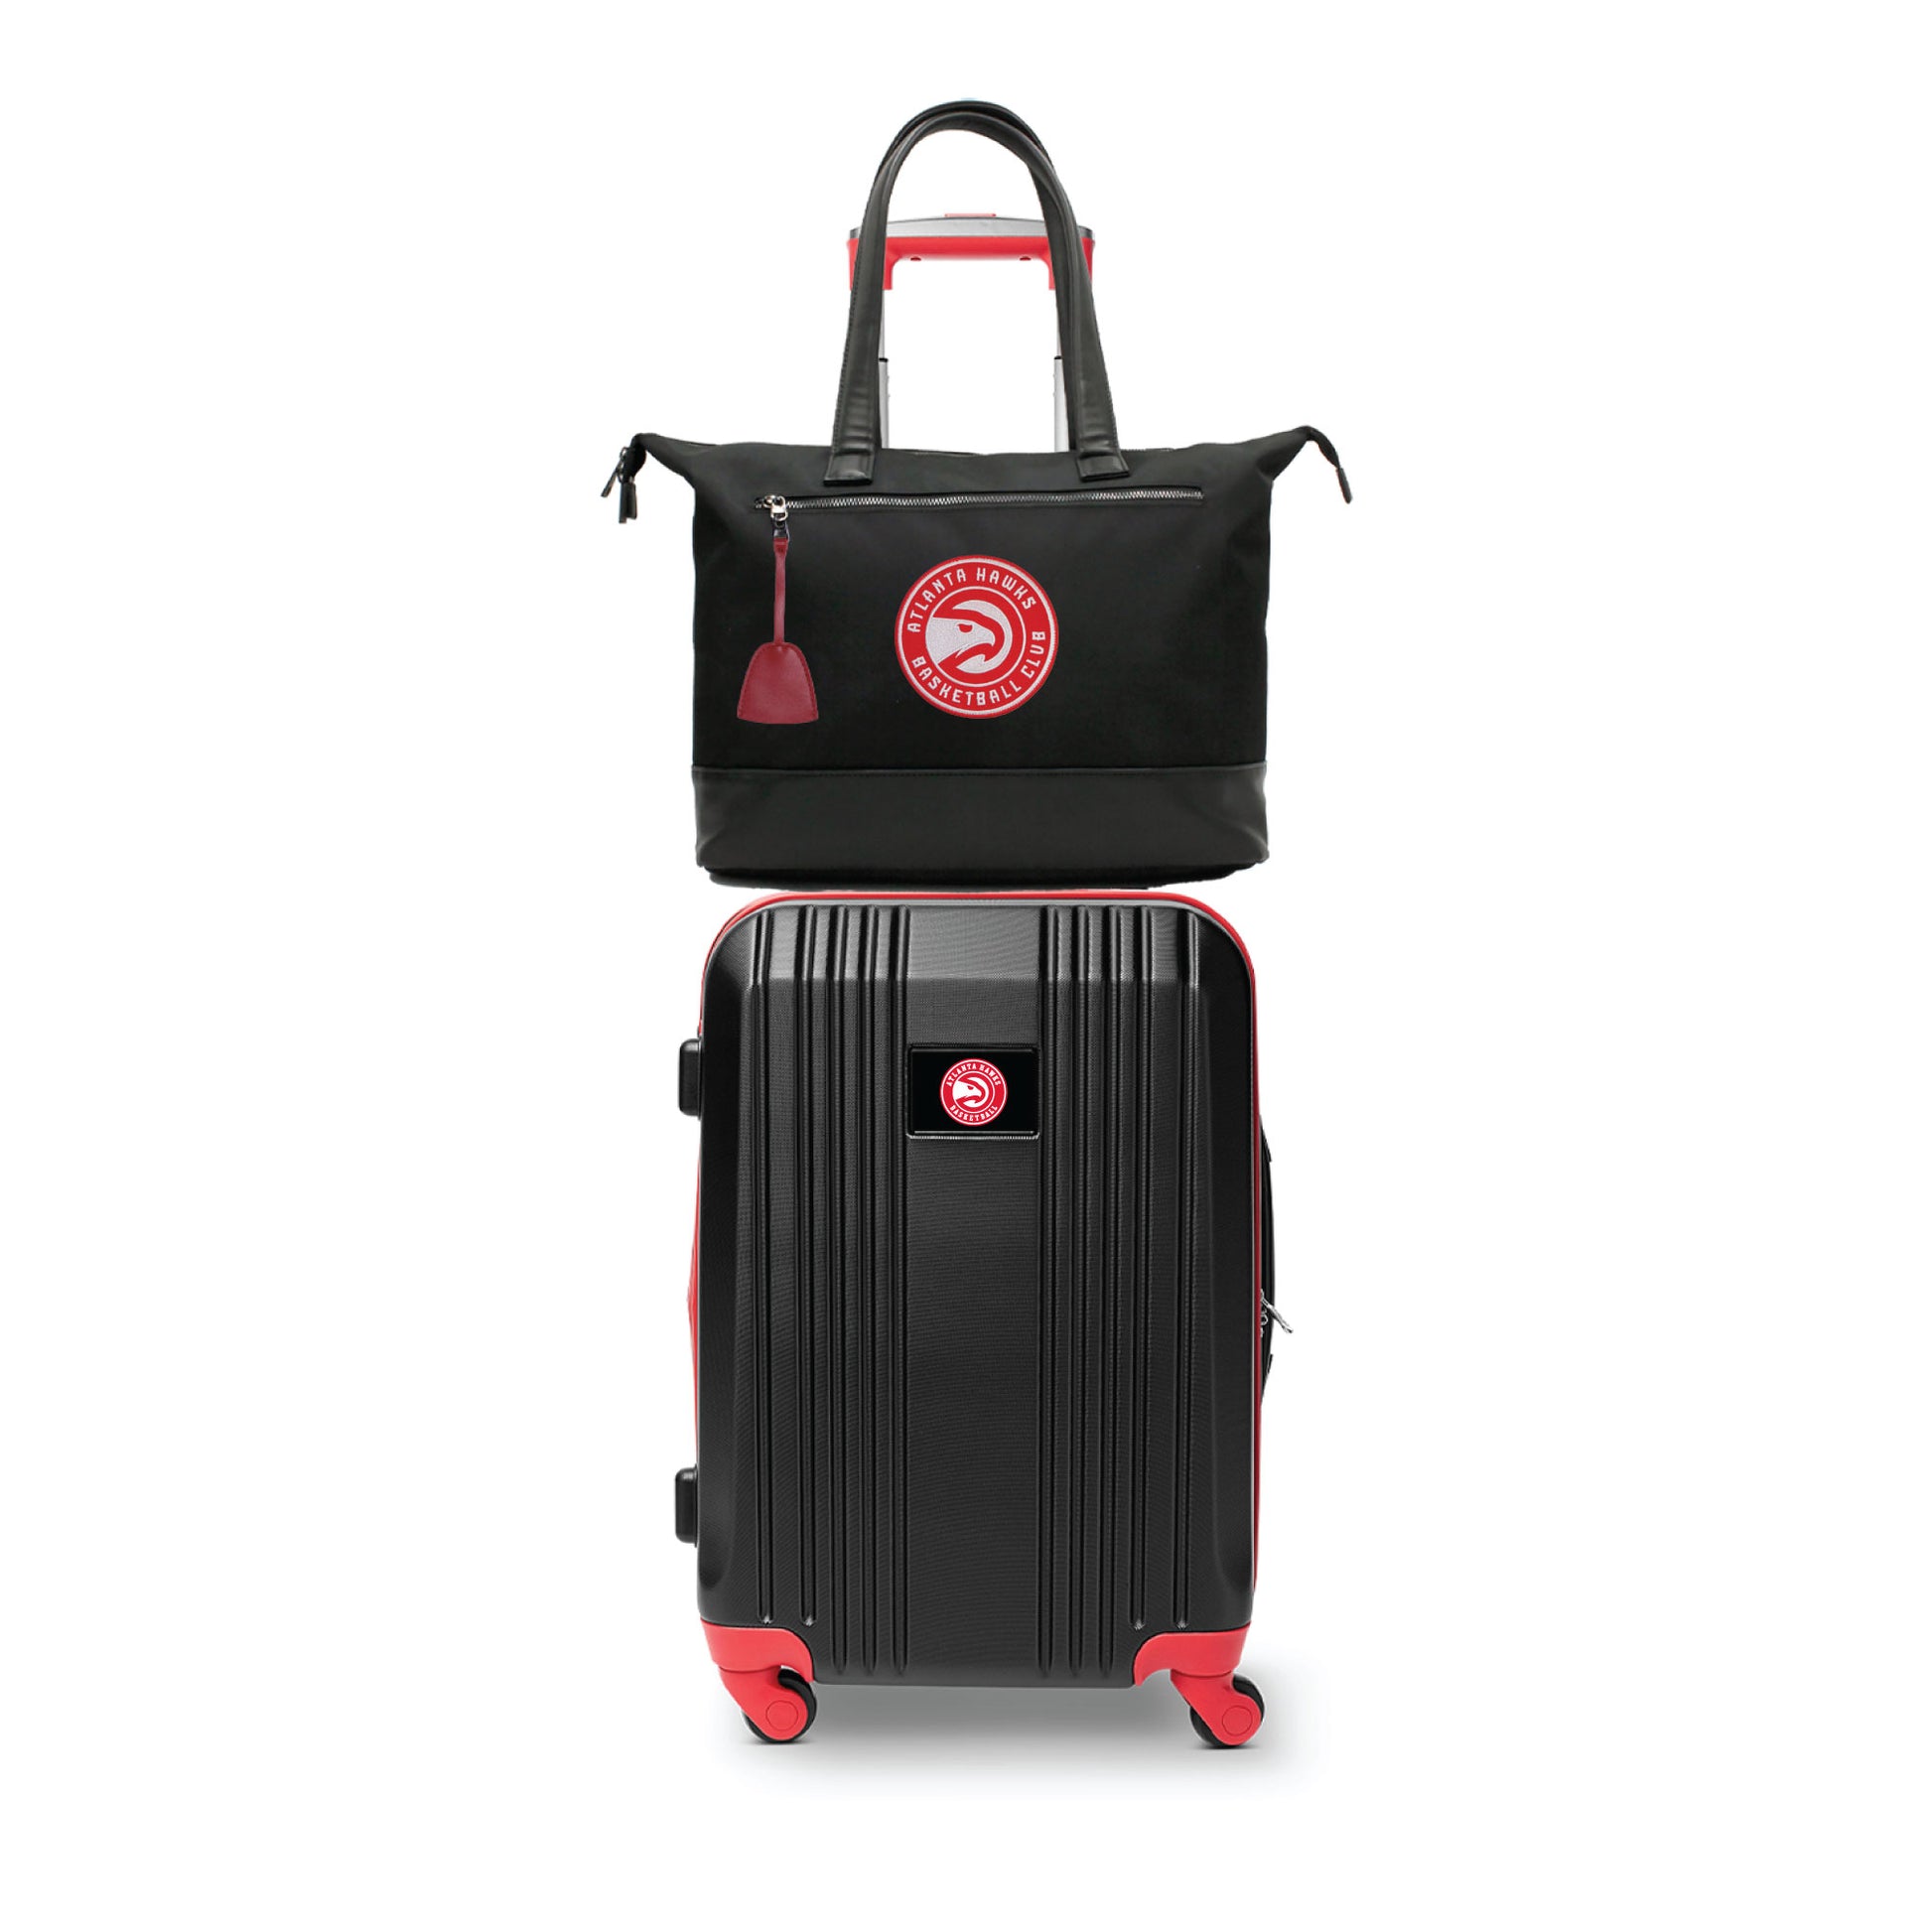 Atlanta Hawks Premium Laptop Tote Bag and Luggage Set